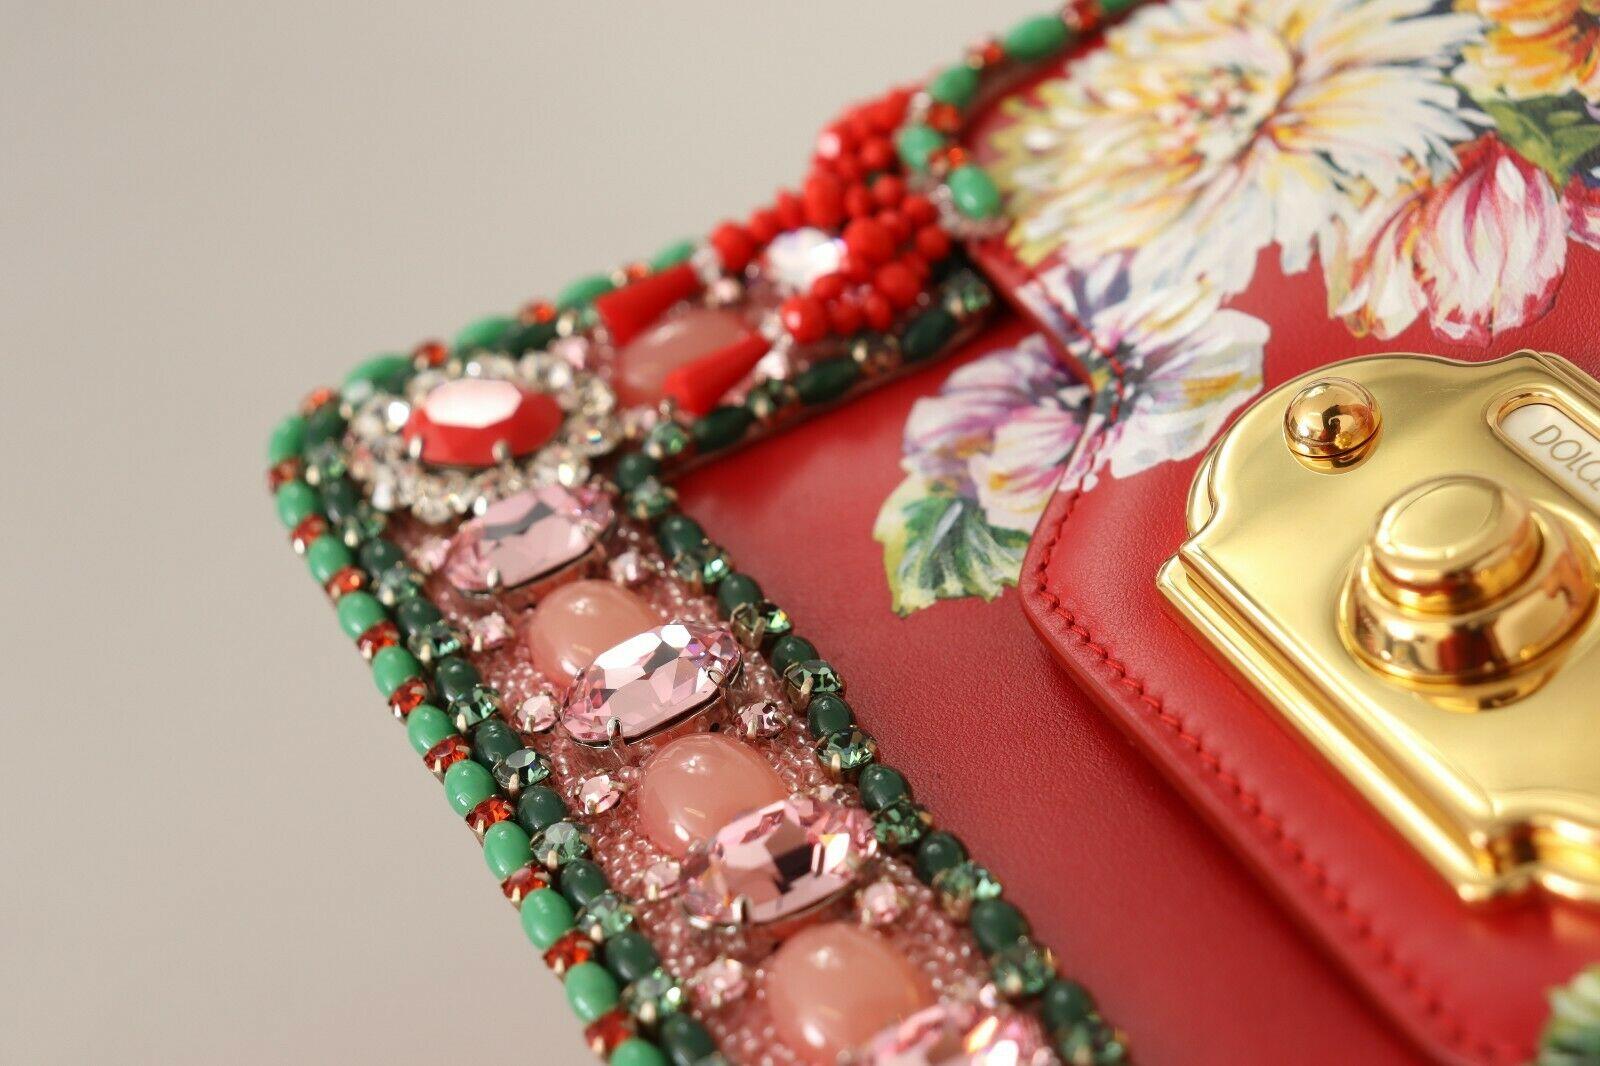 Women's Dolce & Gabbana Red Leather Floral Welcome Handbag Shoulder Bag Top Handle DG